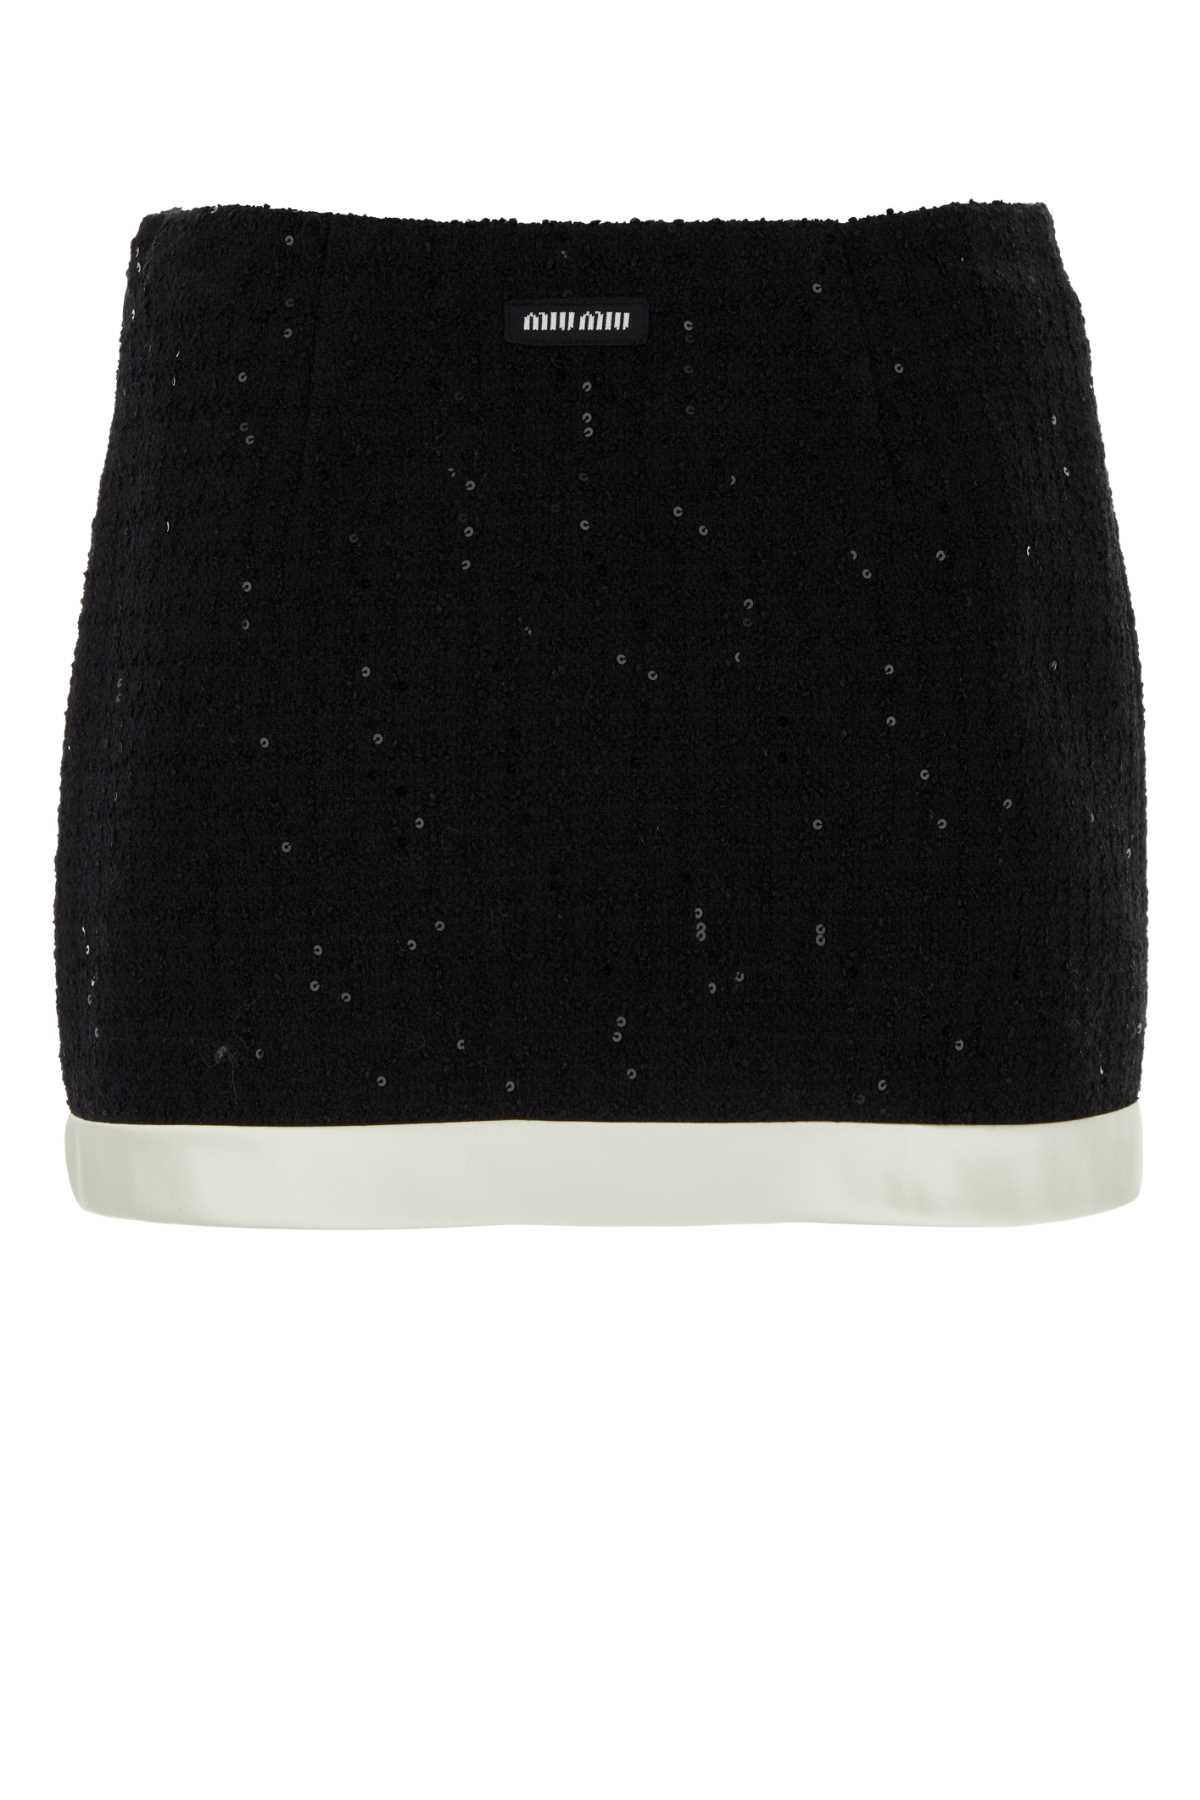 Miu Miu Black Cotton Blend Mini Skirt In Nero